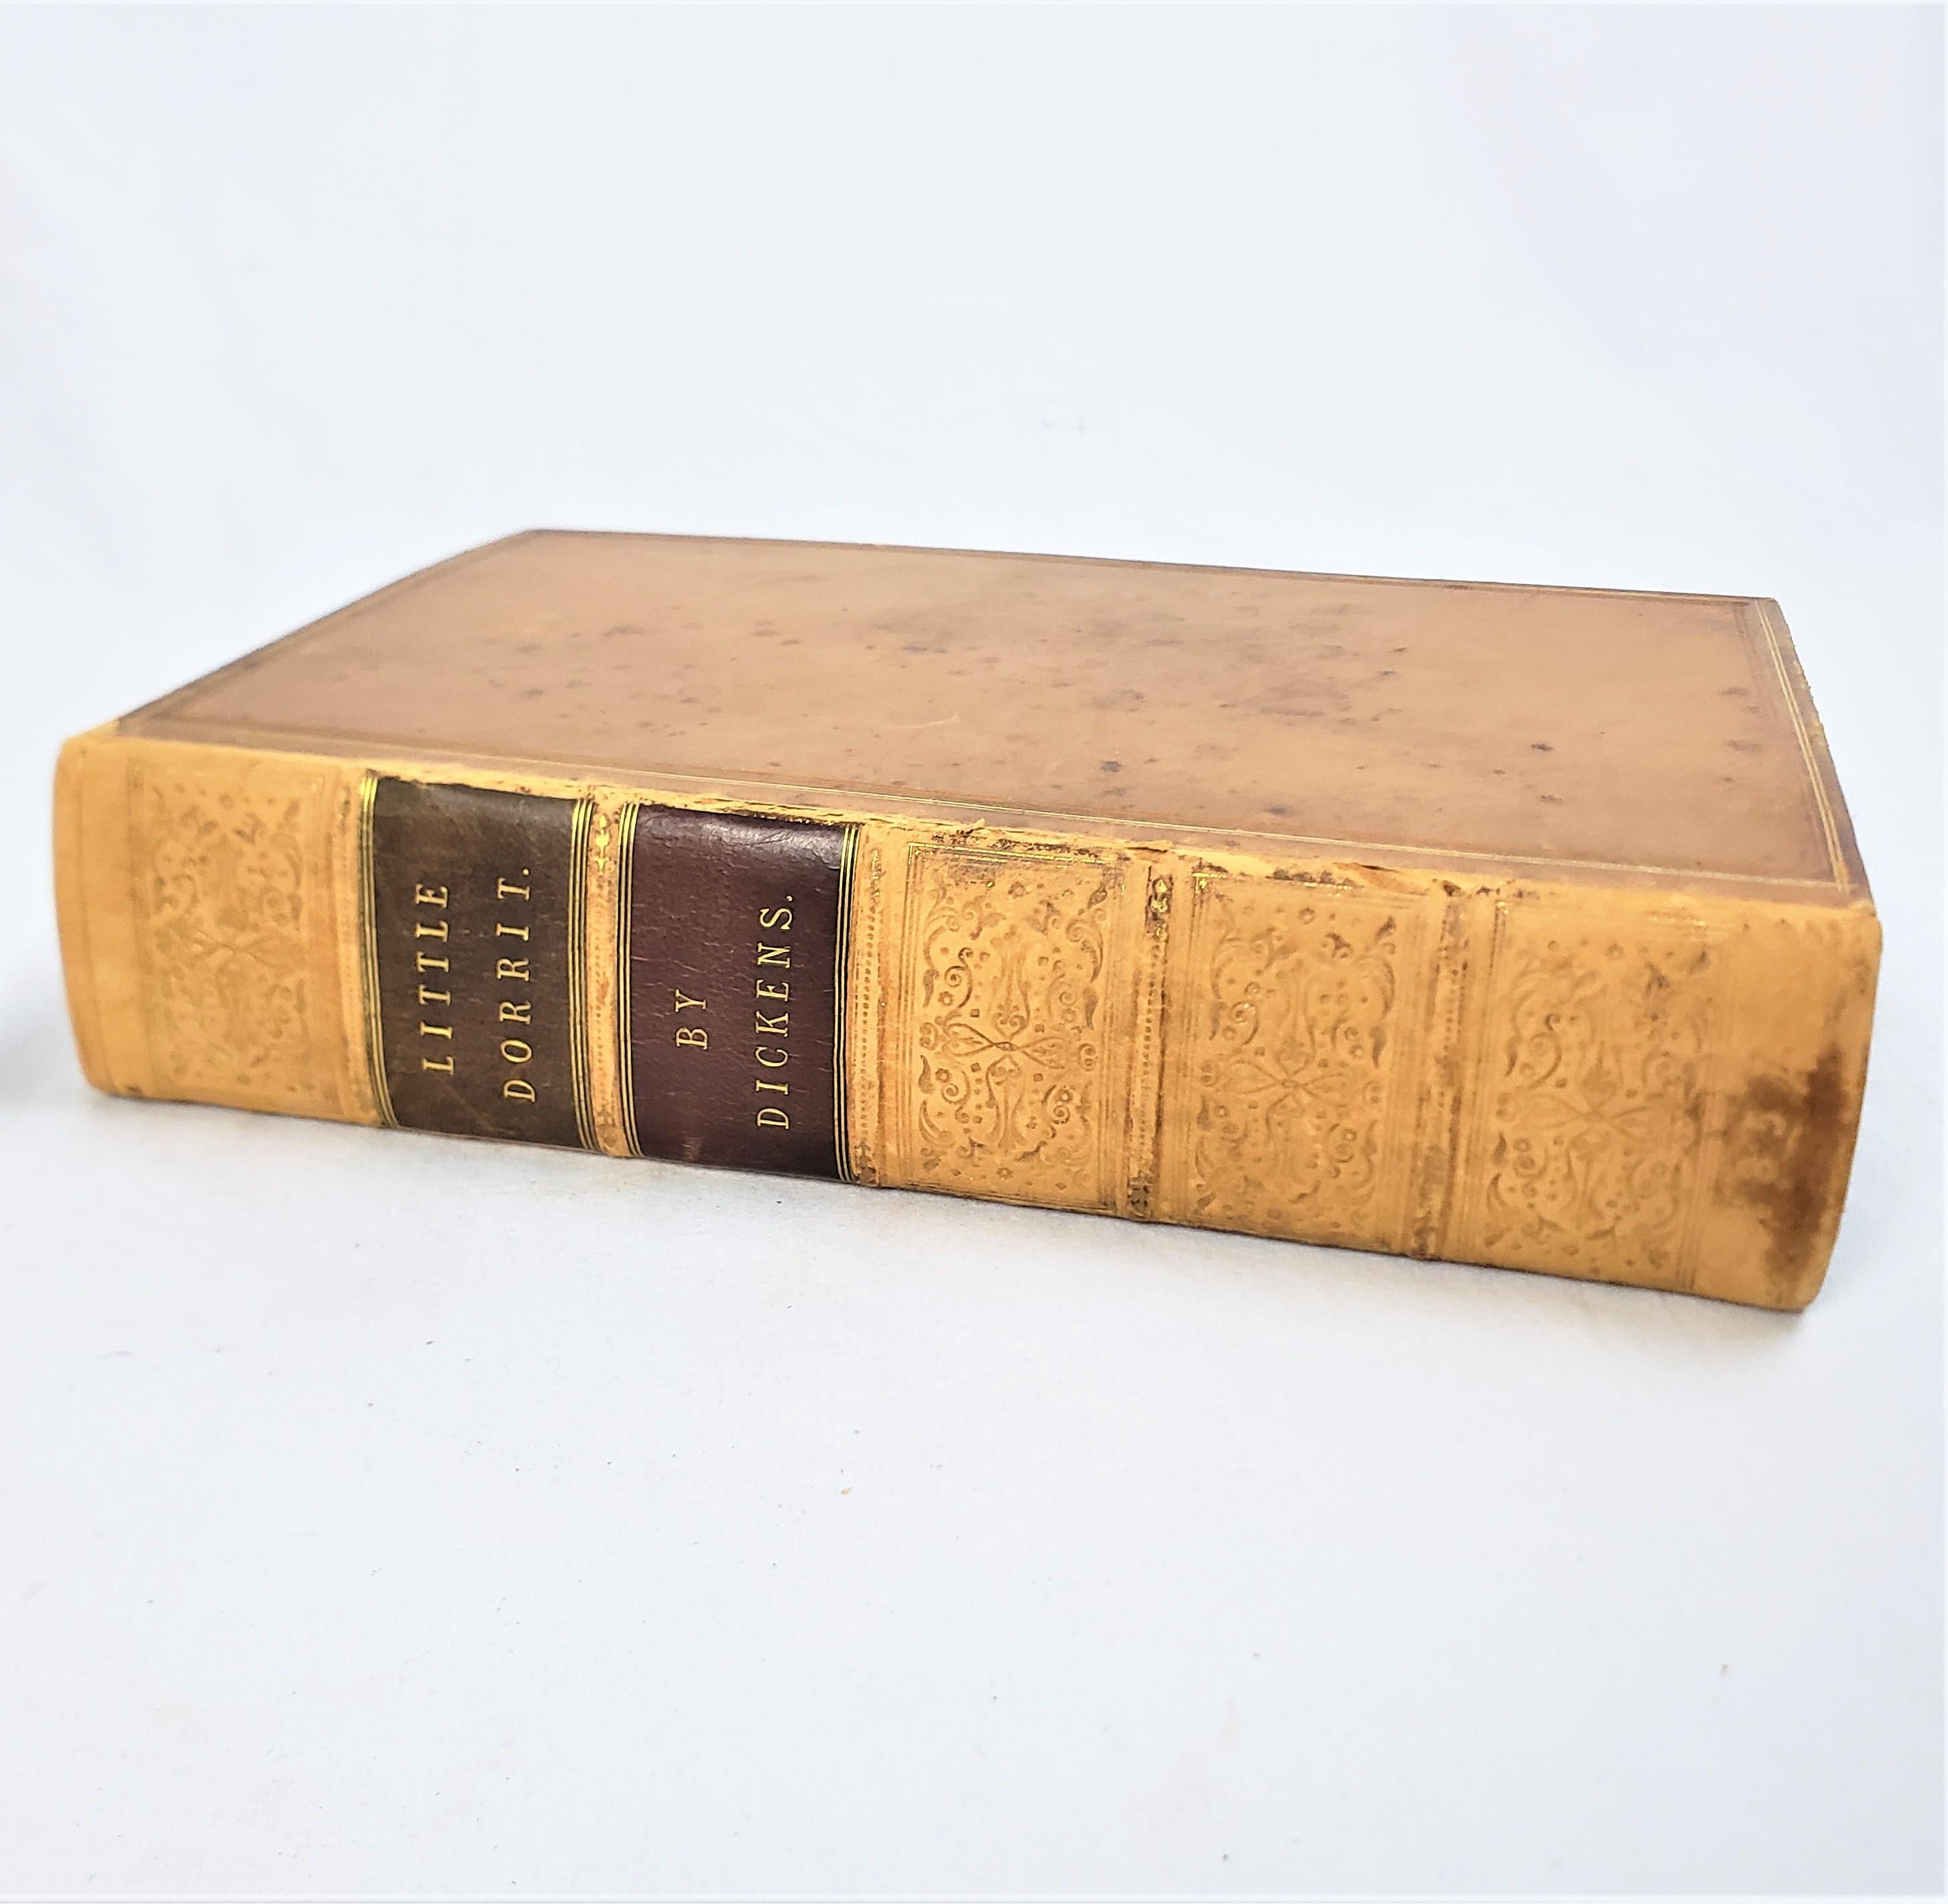 Ce livre ancien de 1ère édition intitulé Little Dorrit a été écrit par Charles Dickens et publié par Chapman and Hall en Angleterre en 1857 dans le style victorien de l'époque avec des gravures de Hablot Knight Browne 